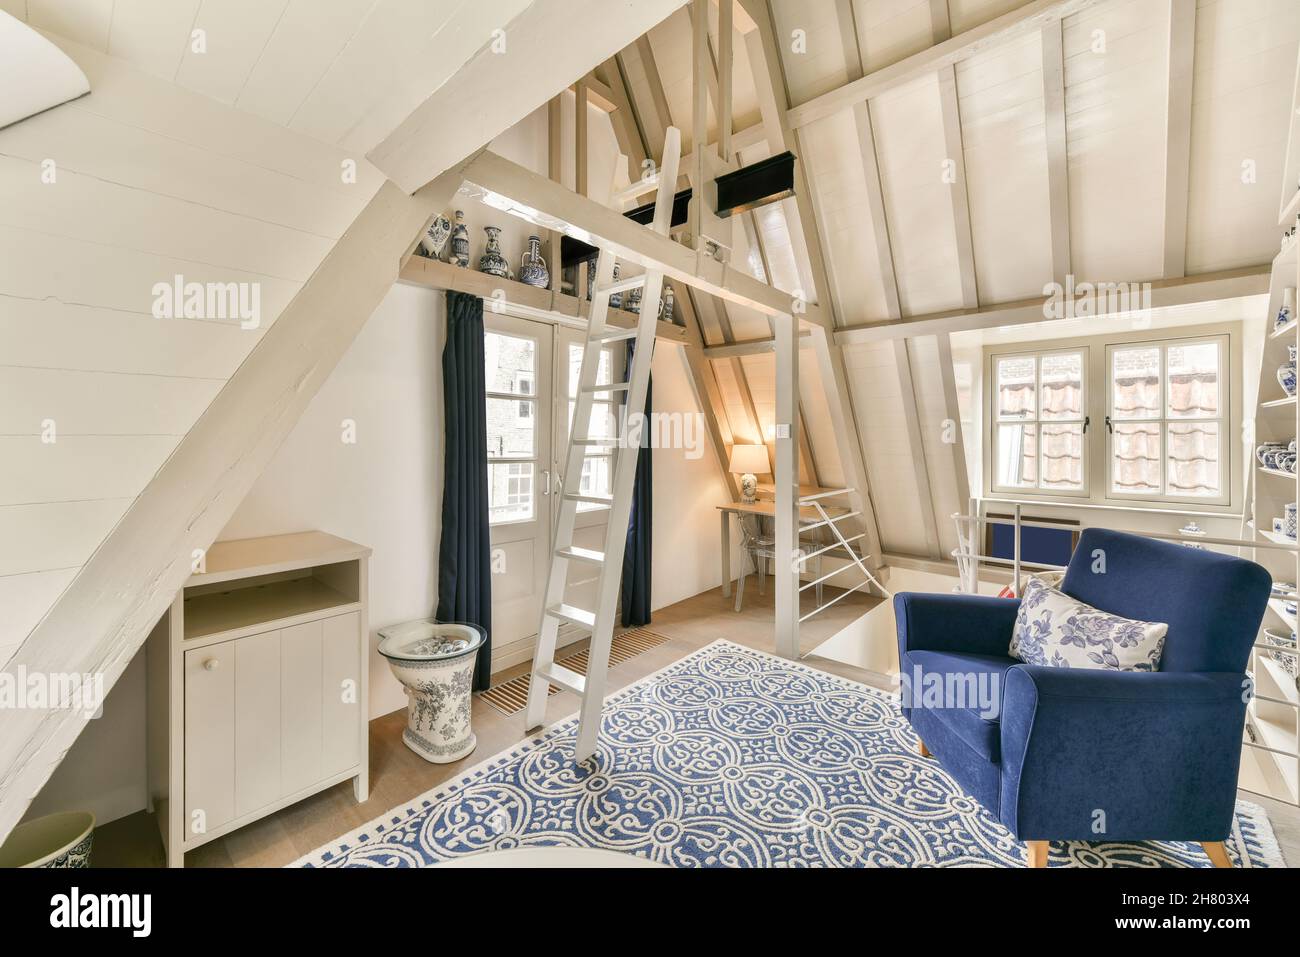 Fauteuil bleu avec oreiller placé sur la moquette près de l'échelle blanche dans le grenier clair avec des fenêtres et vases en céramique dans l'appartement Banque D'Images